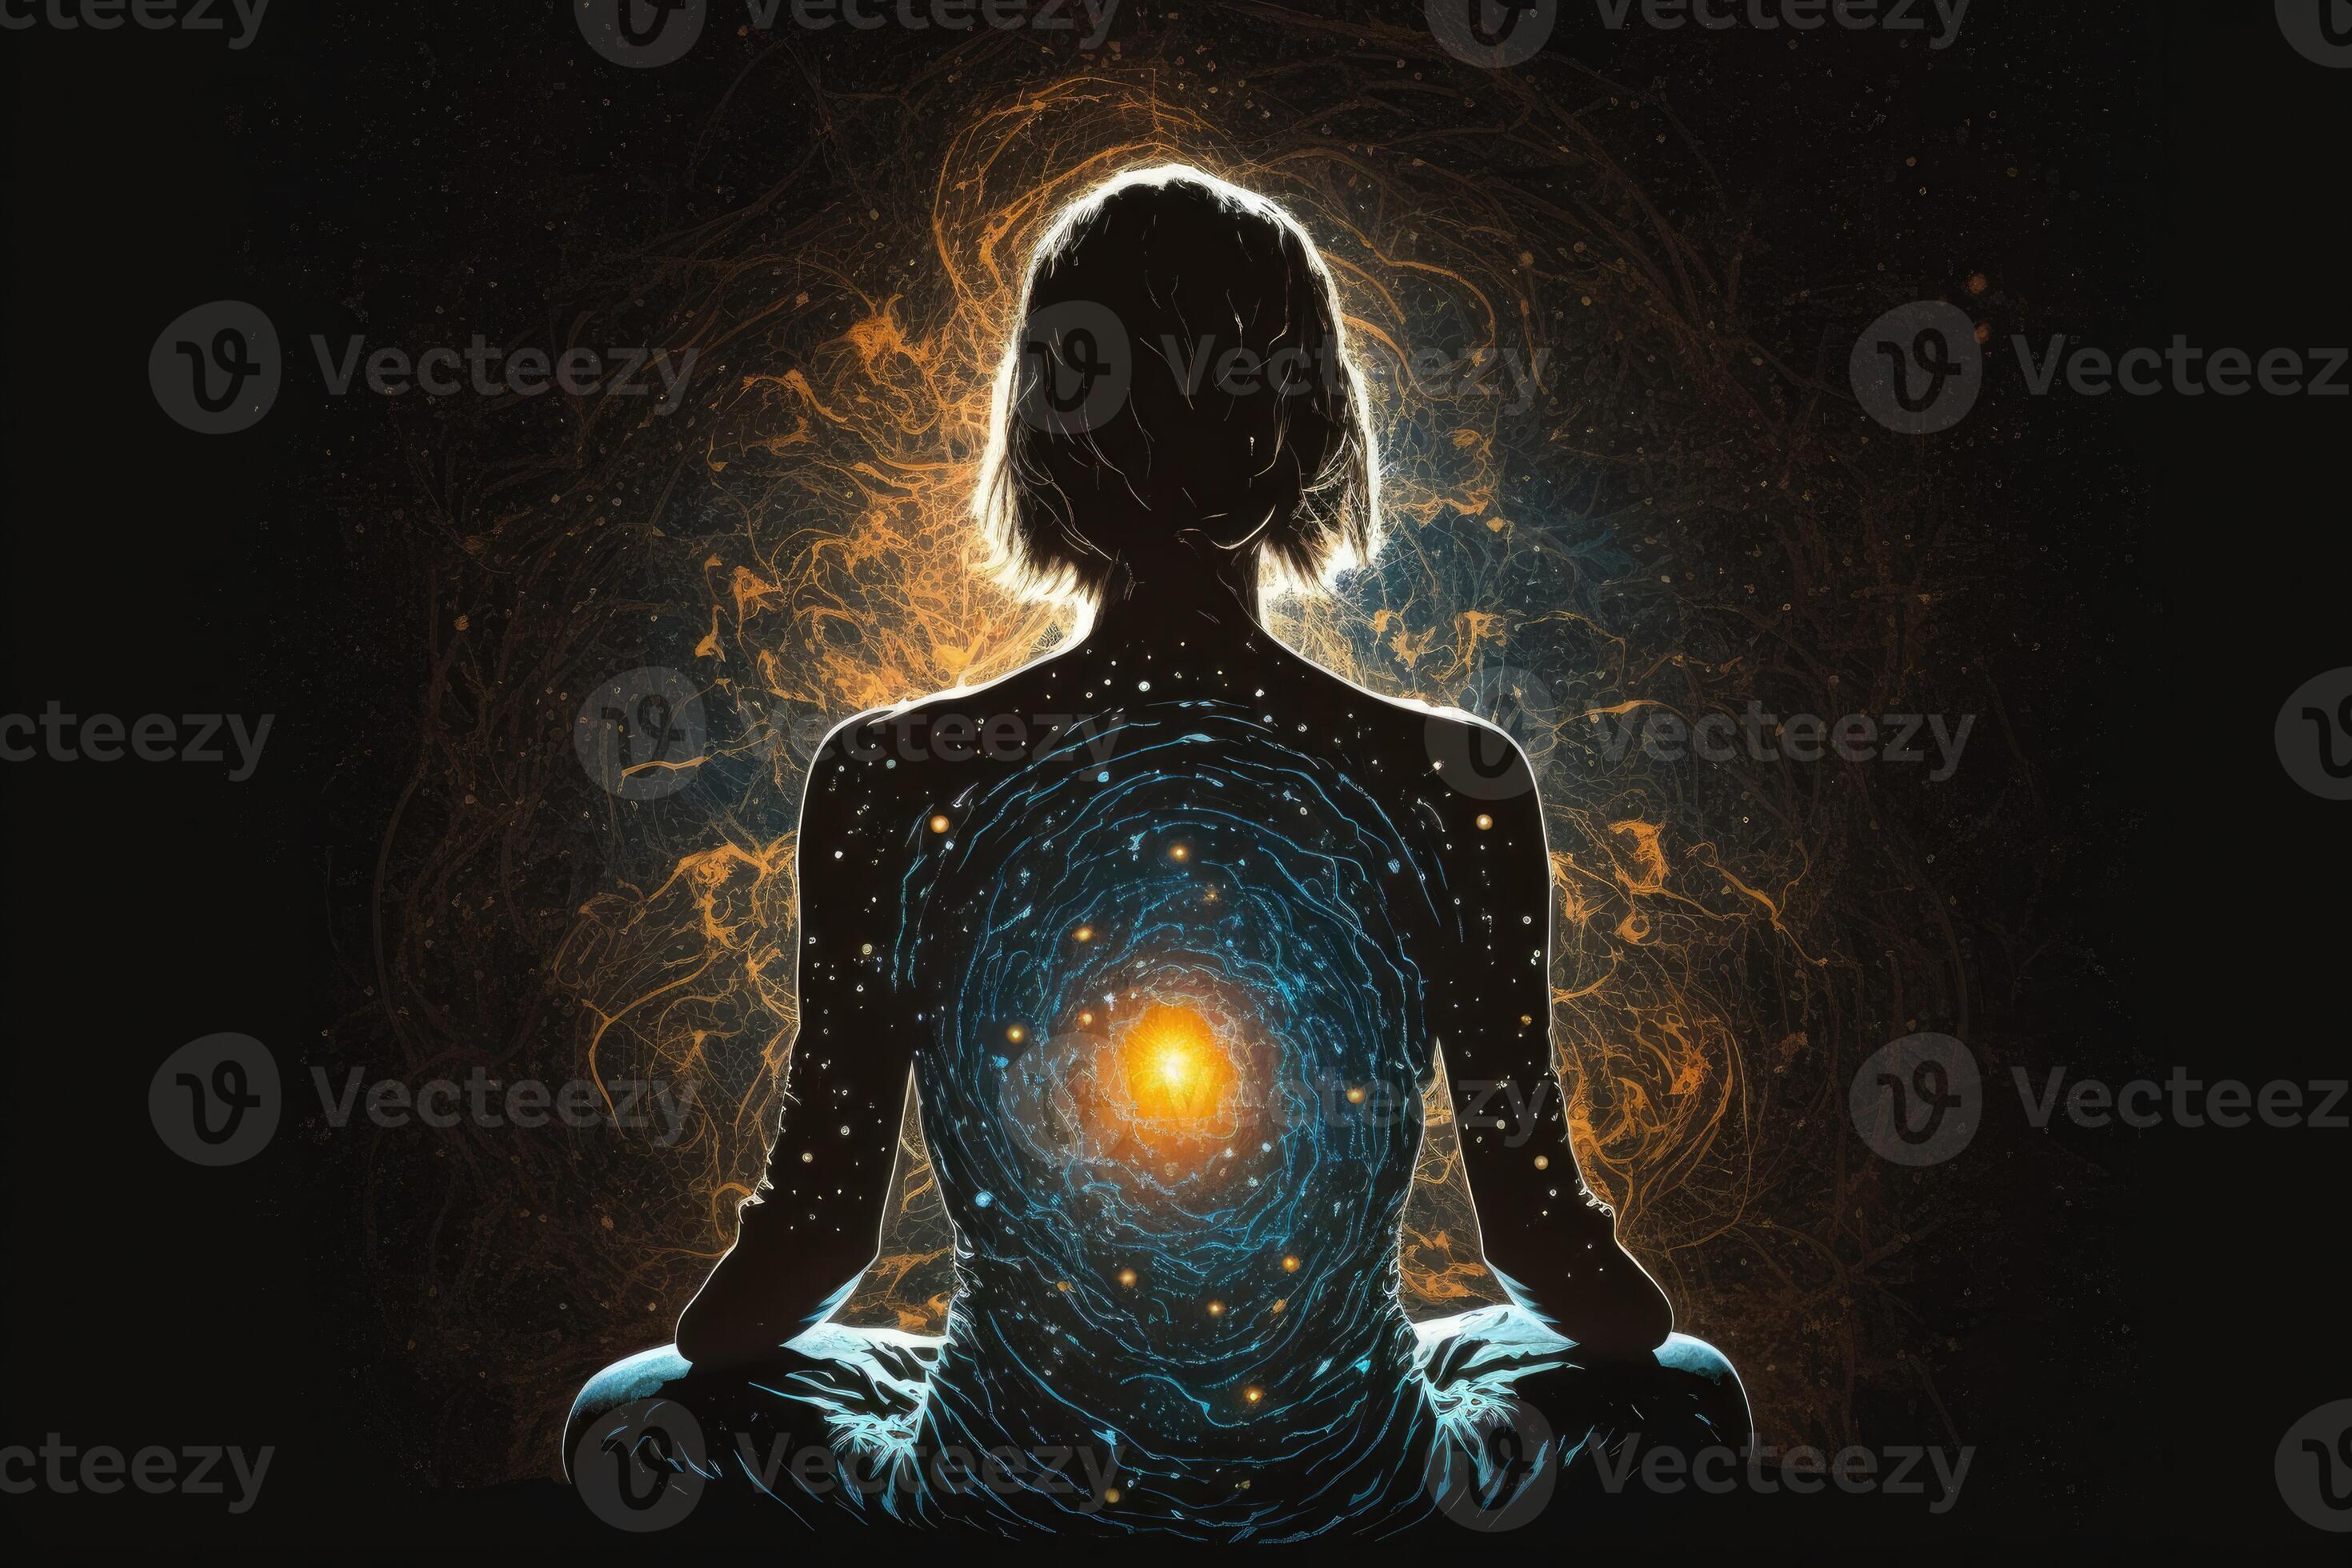 https://static.vecteezy.com/ti/fotos-gratis/p2/25235733-ai-gerado-mulher-sentado-dentro-ioga-energia-do-a-universo-vida-forca-prana-foto.jpg